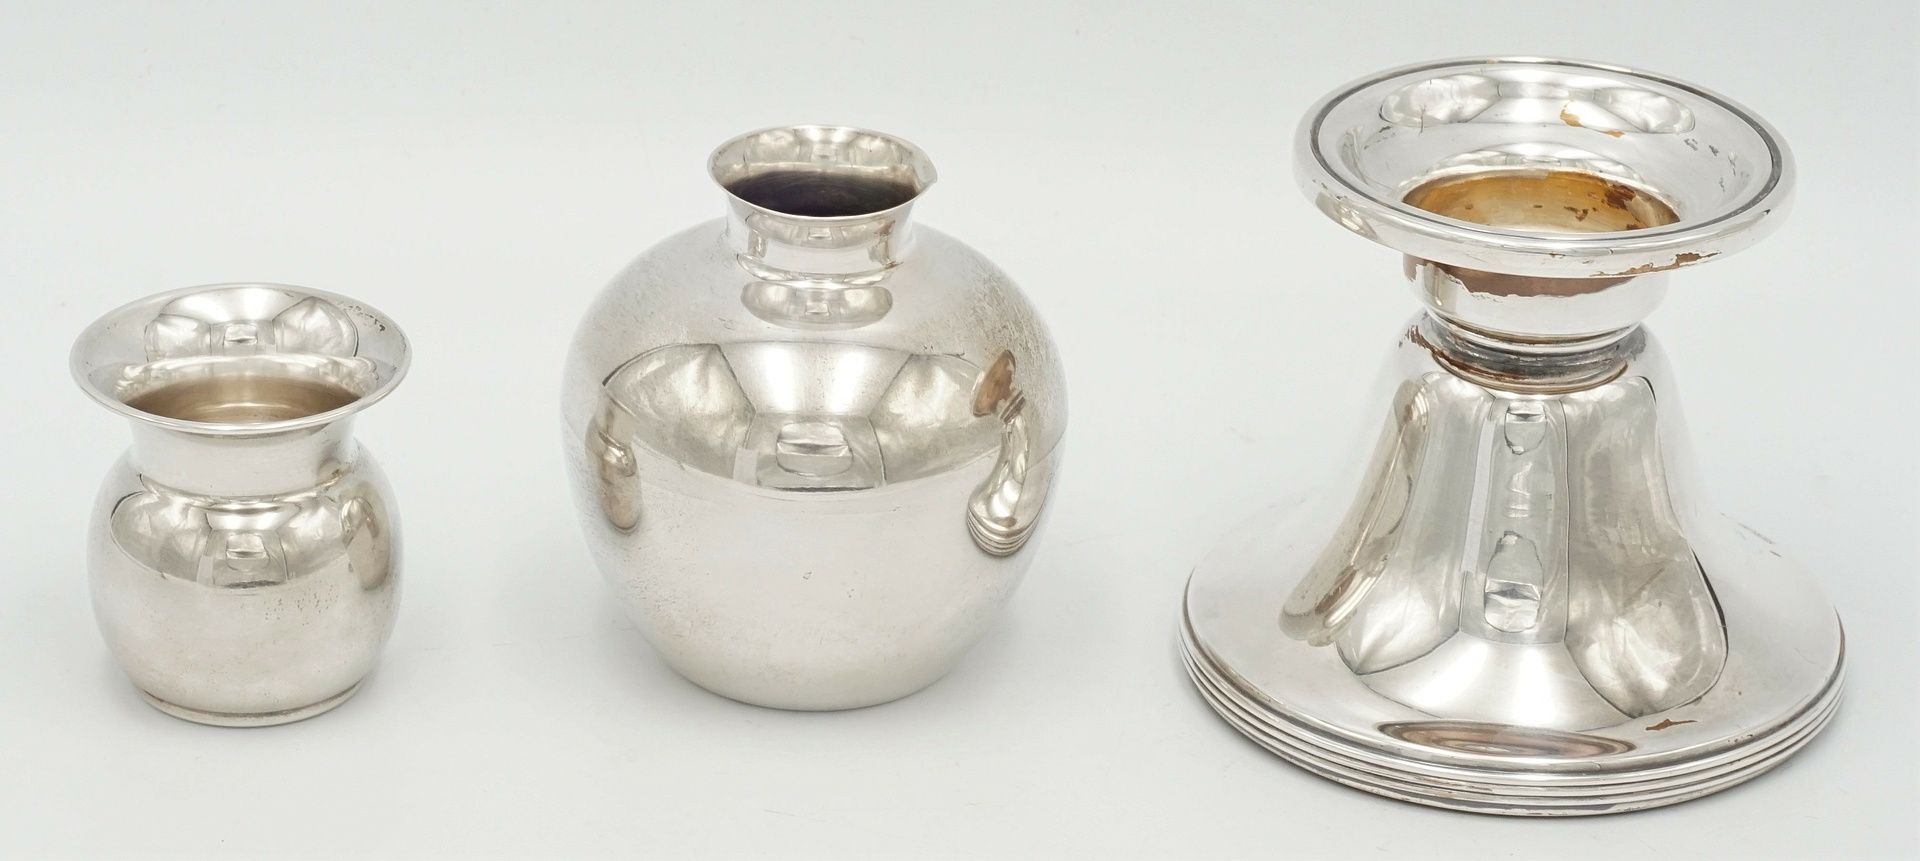 Kännchen, Vase und Kerzenhalter aus Silber